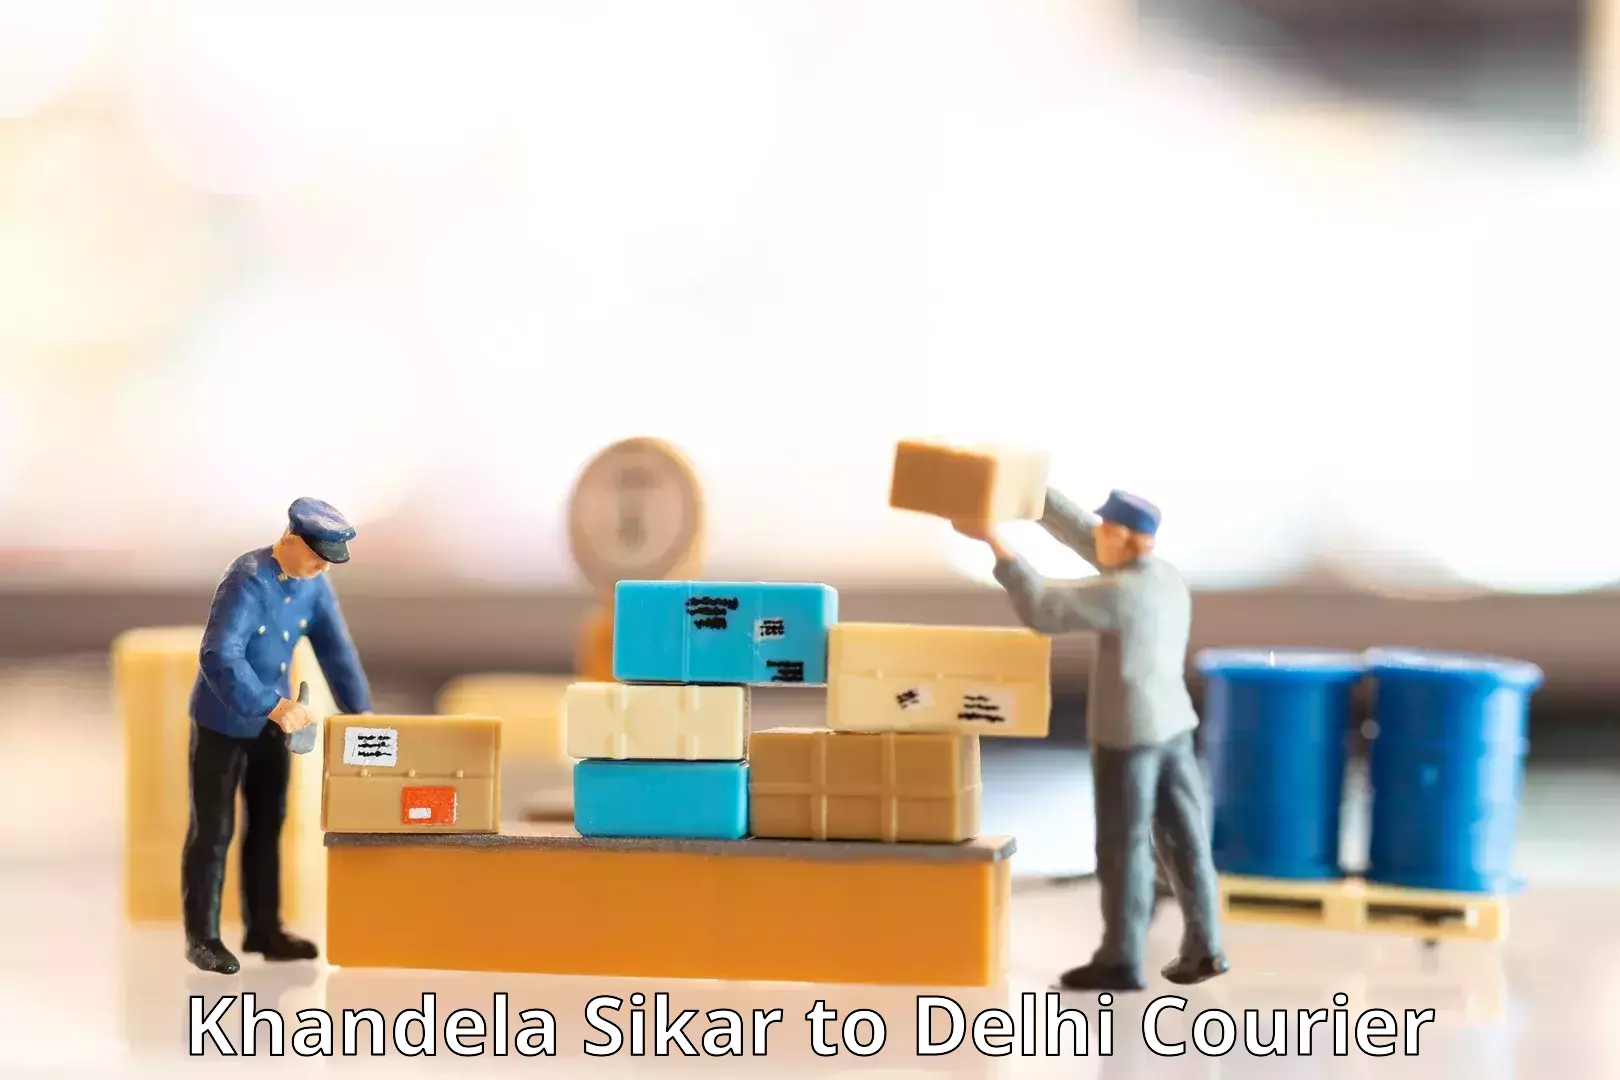 International courier networks Khandela Sikar to Kalkaji